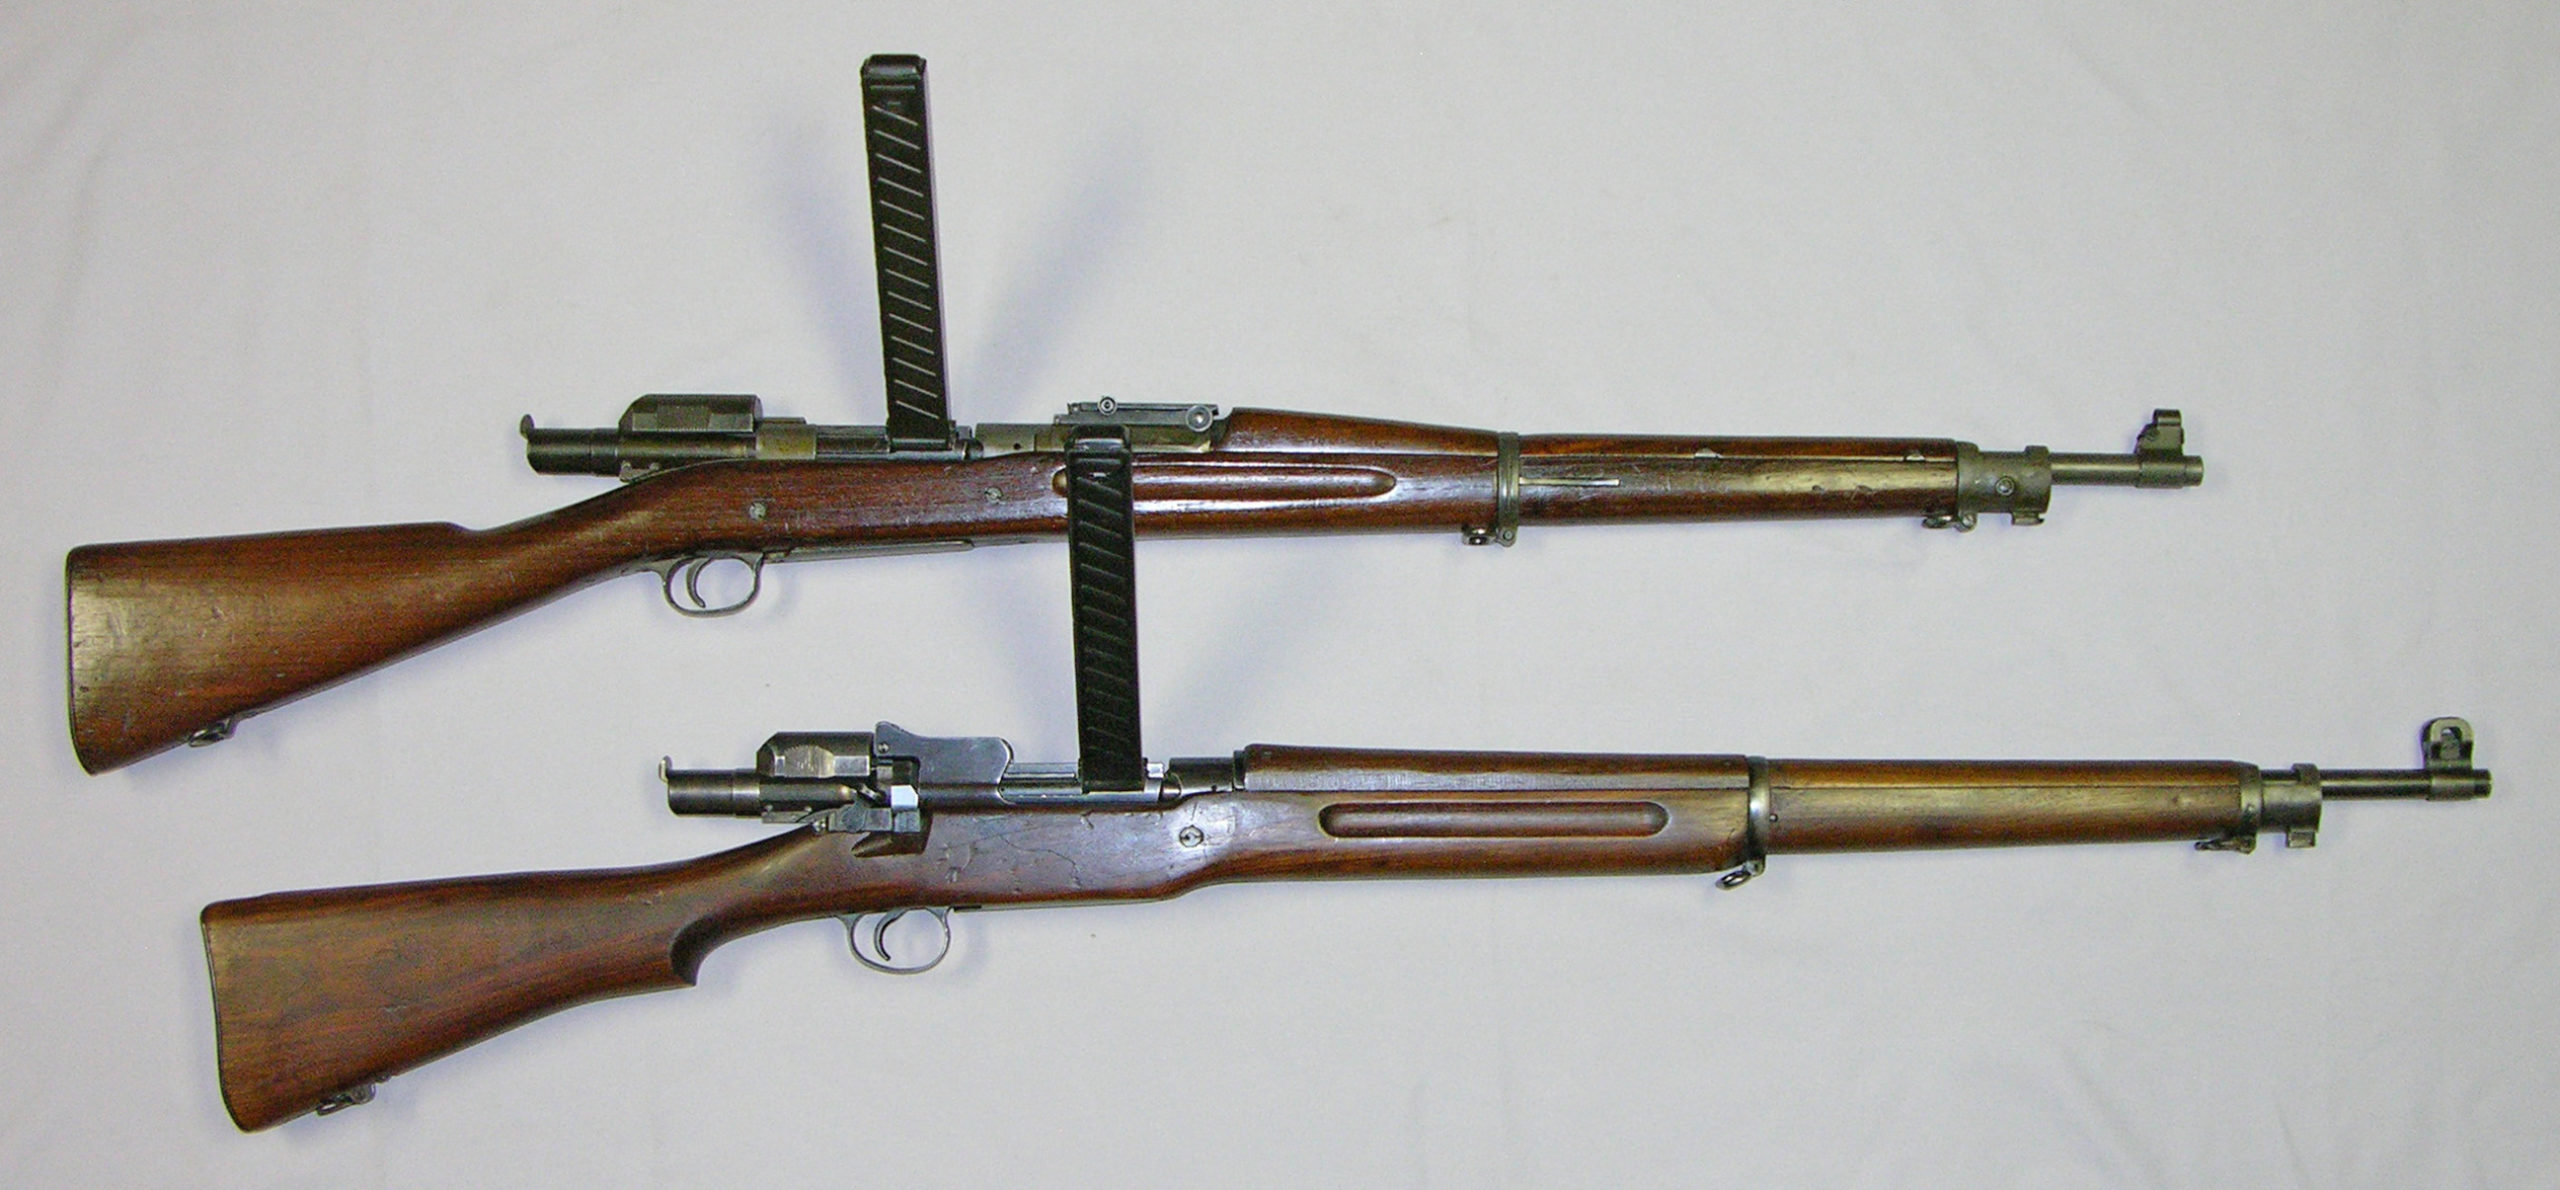 Remington Pederson Devices M1903 and M1917